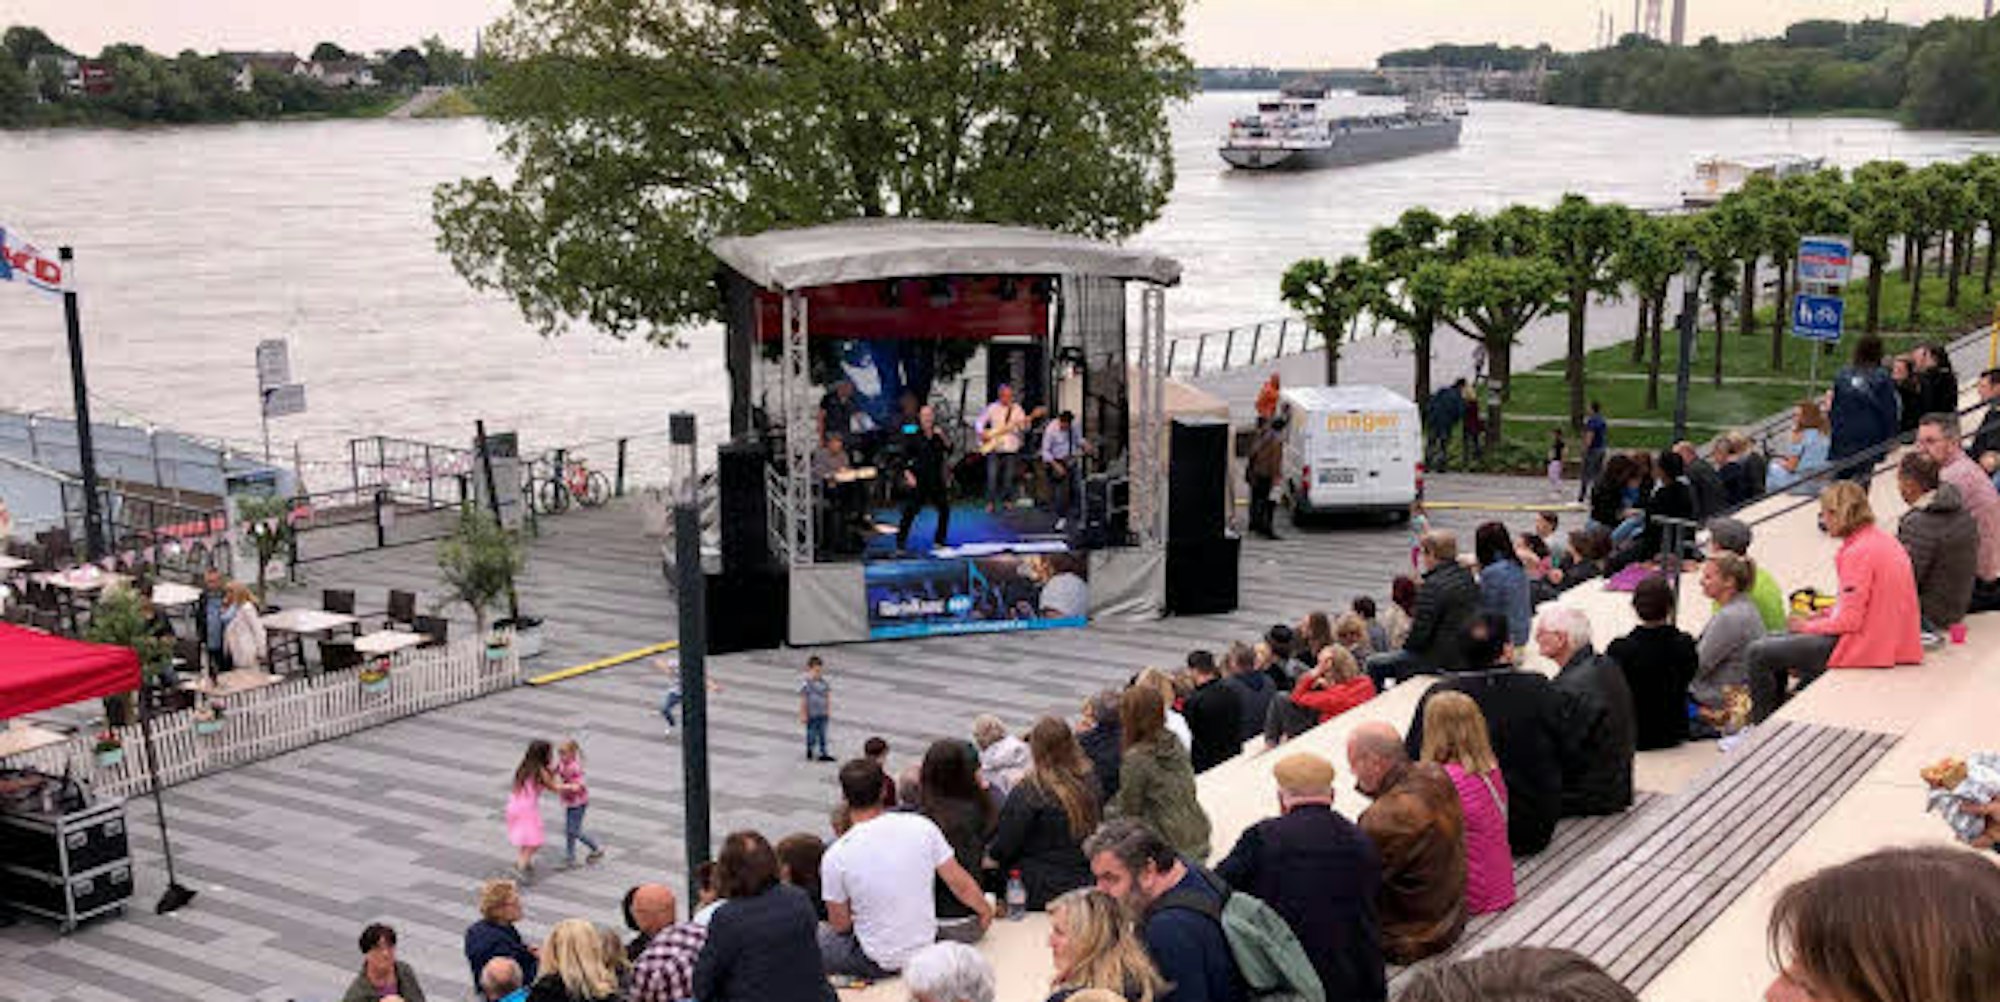 Zahlreiche Besucher zog es am Samstag für die Neuauflage des Rheinklang-Festivals auf die Rheintreppe, wo sie die Aussicht auf den Rhein und die Musik genießen konnten.